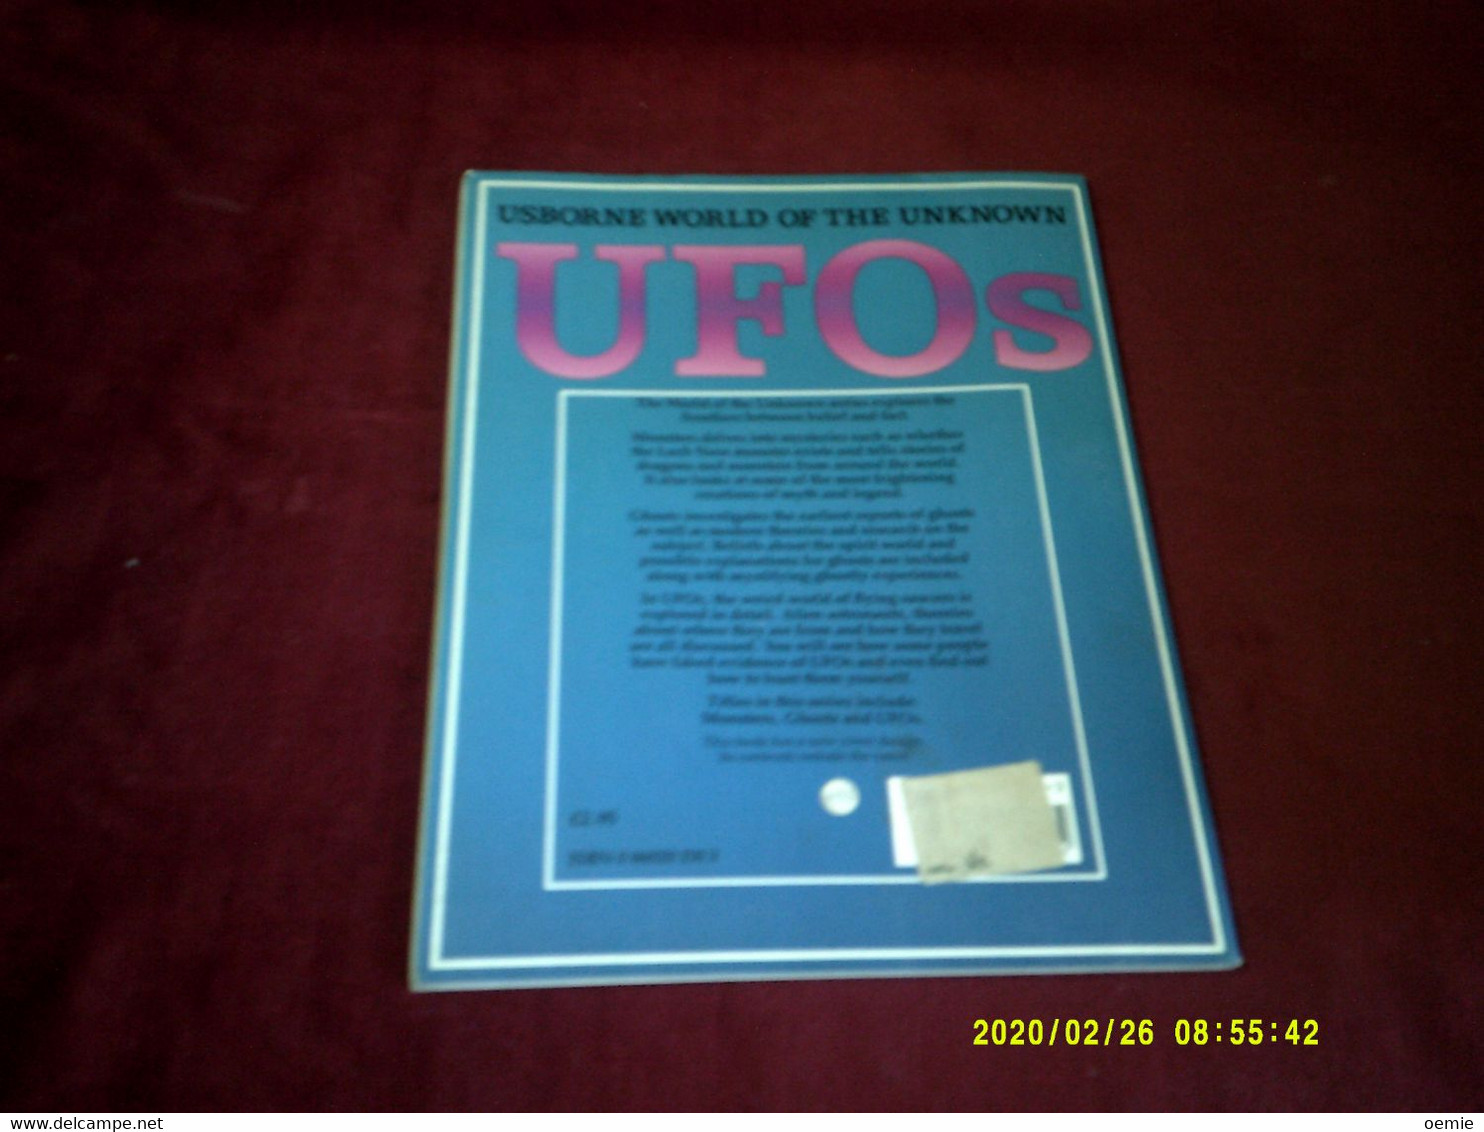 MAGAZINE  UFO'S USBORNE WORLD  OF THE UNKNOWN - Culture